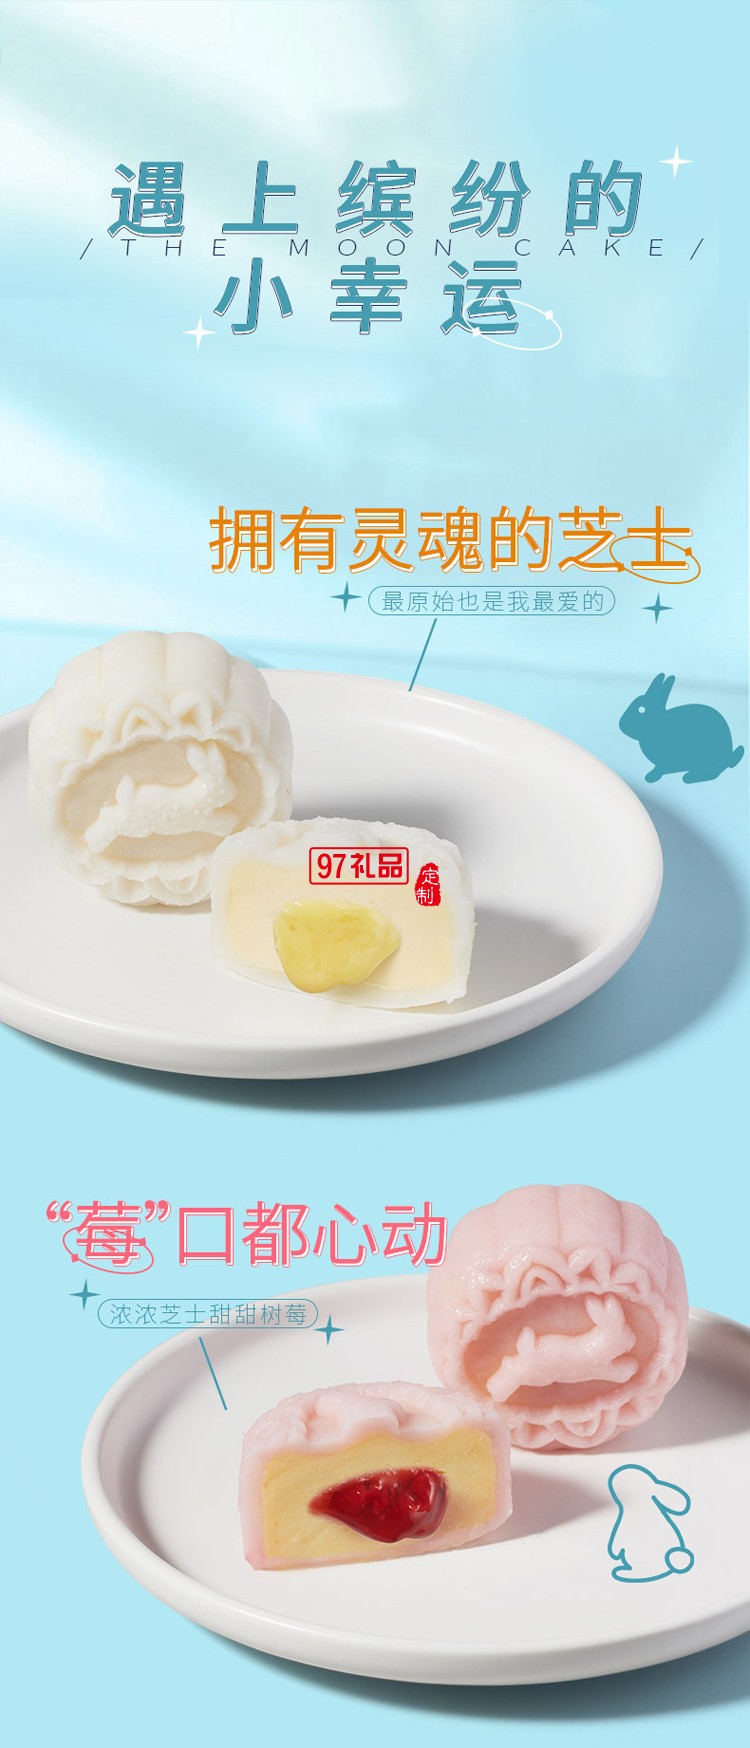 广州酒家 冰梦情缘法式乳酪冰皮月饼